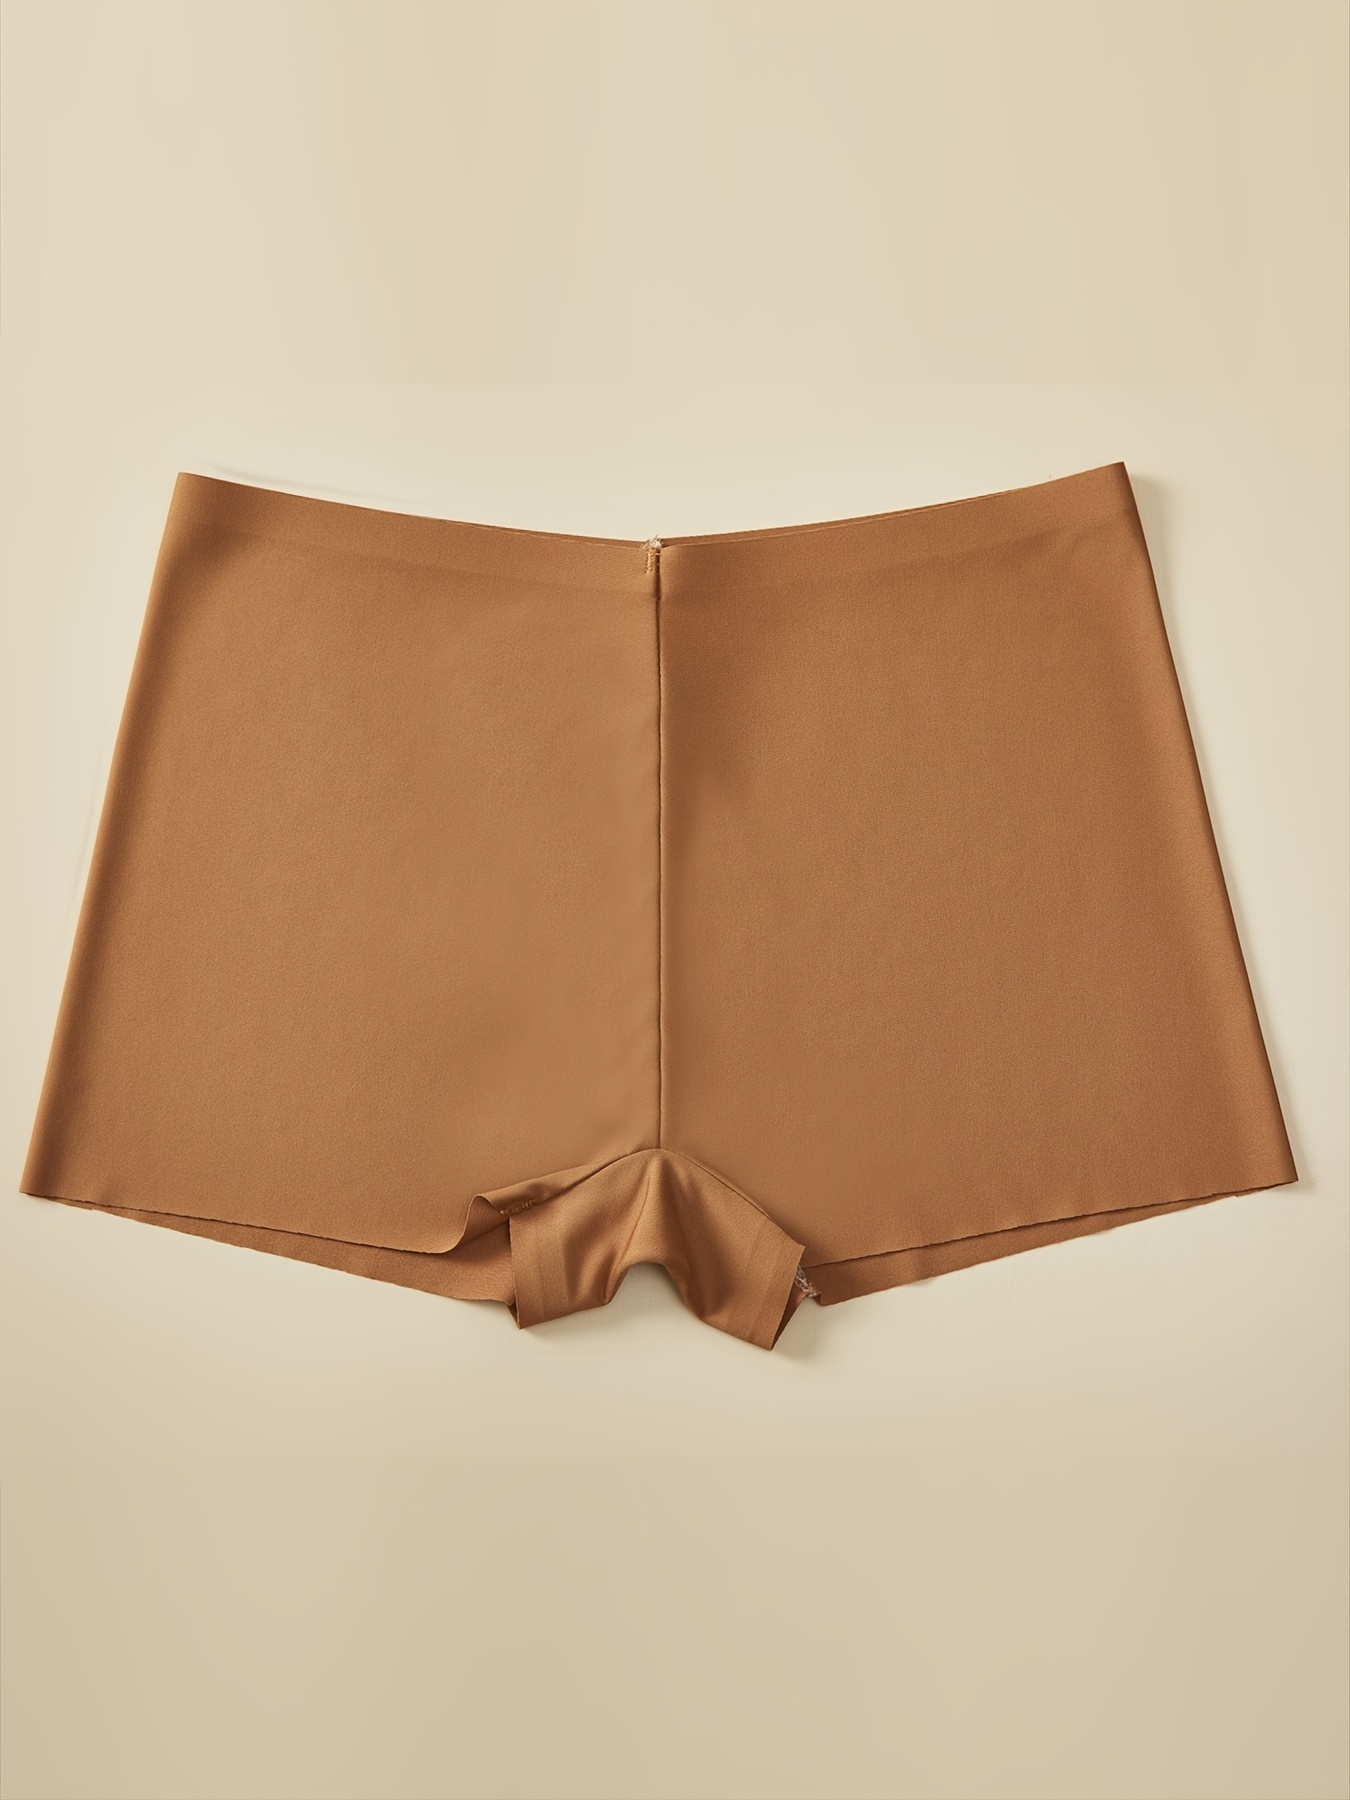 Pjtewawe Womens Pants Seamless Non Slip Shorts for Underskirt